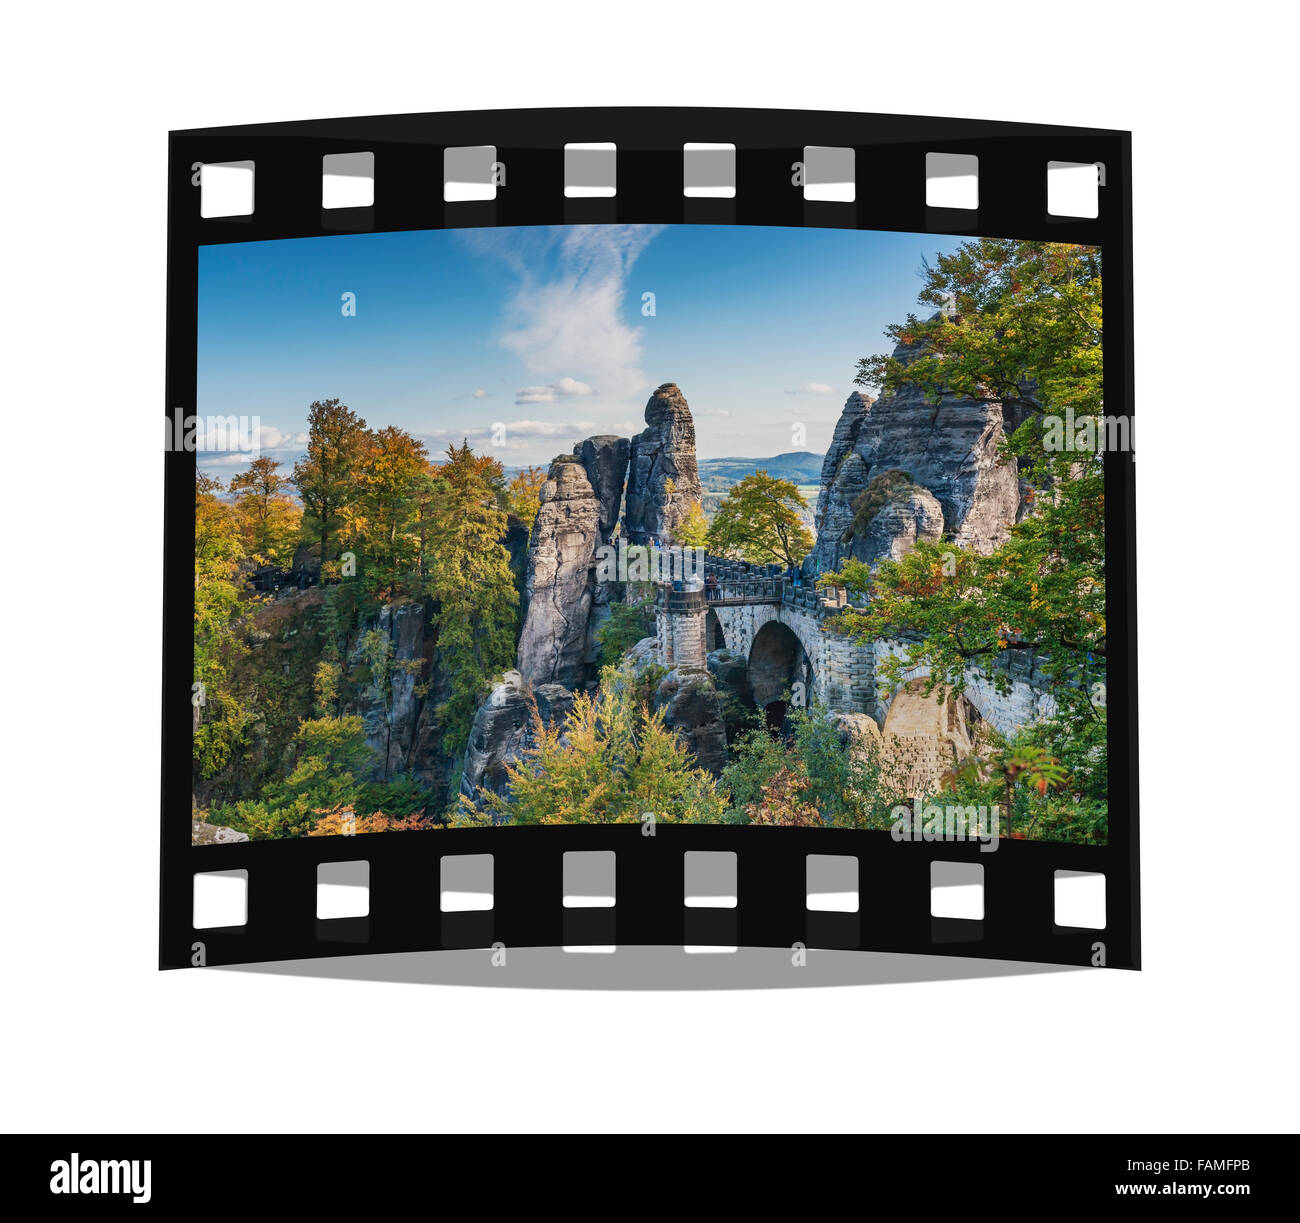 Vue de la formation rocheuse Bastei (Bastion), la Suisse Saxonne, des montagnes de grès de l'Elbe, Saxe, Allemagne, Europe Banque D'Images